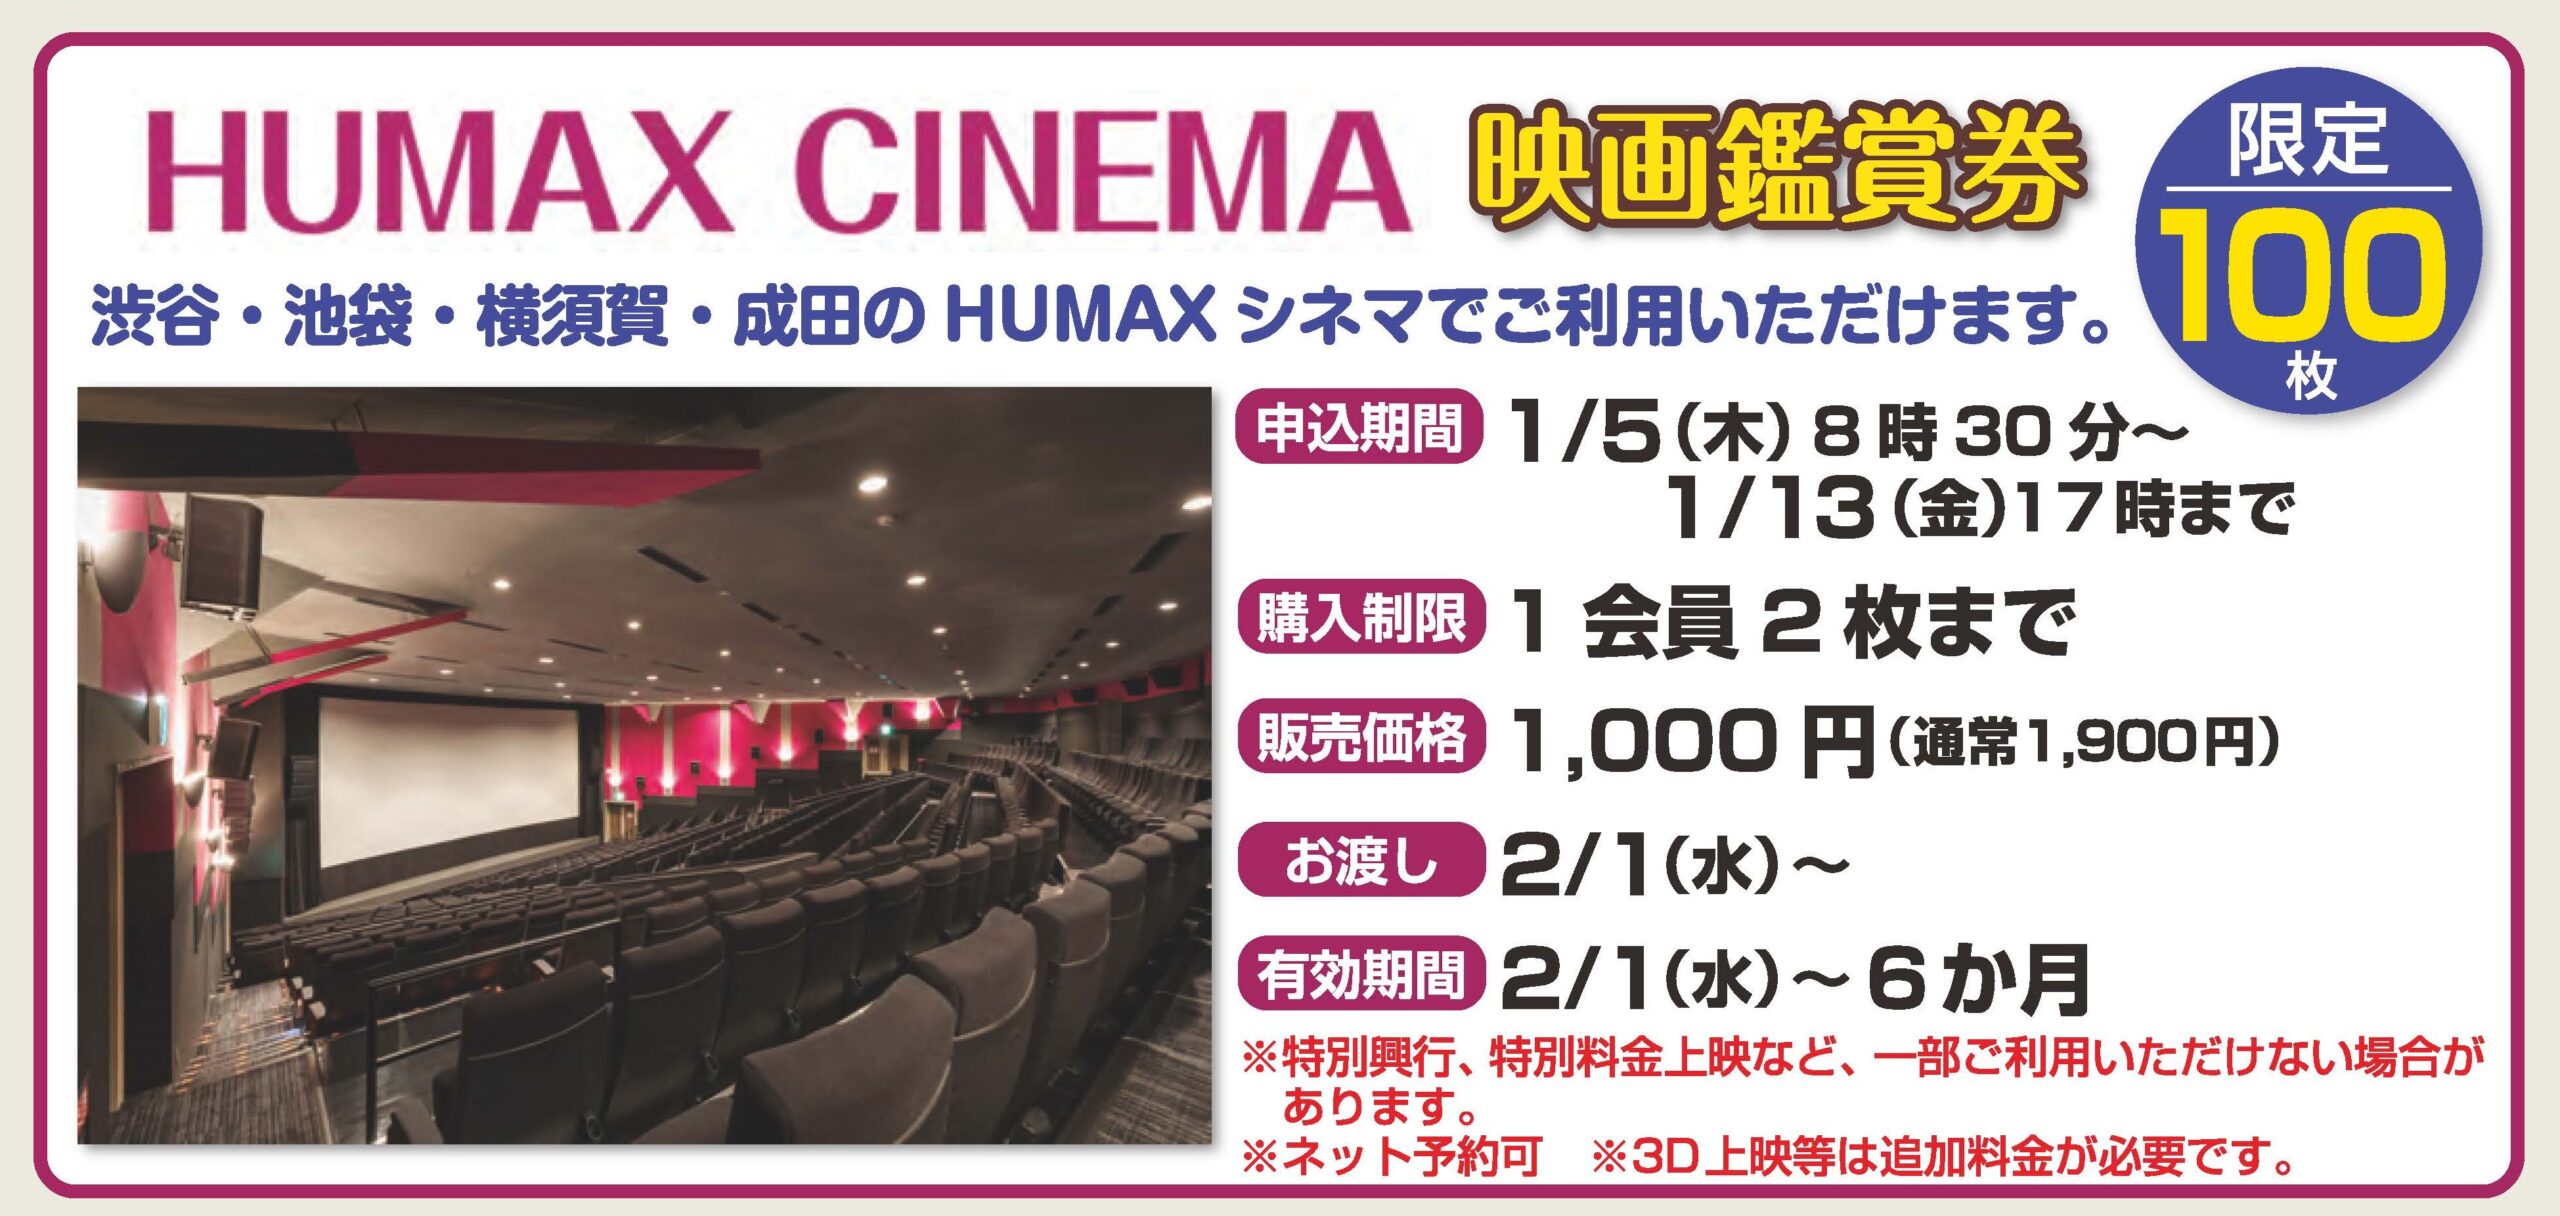 お渡ししてます！HUMAX CINEMA 映画観賞券